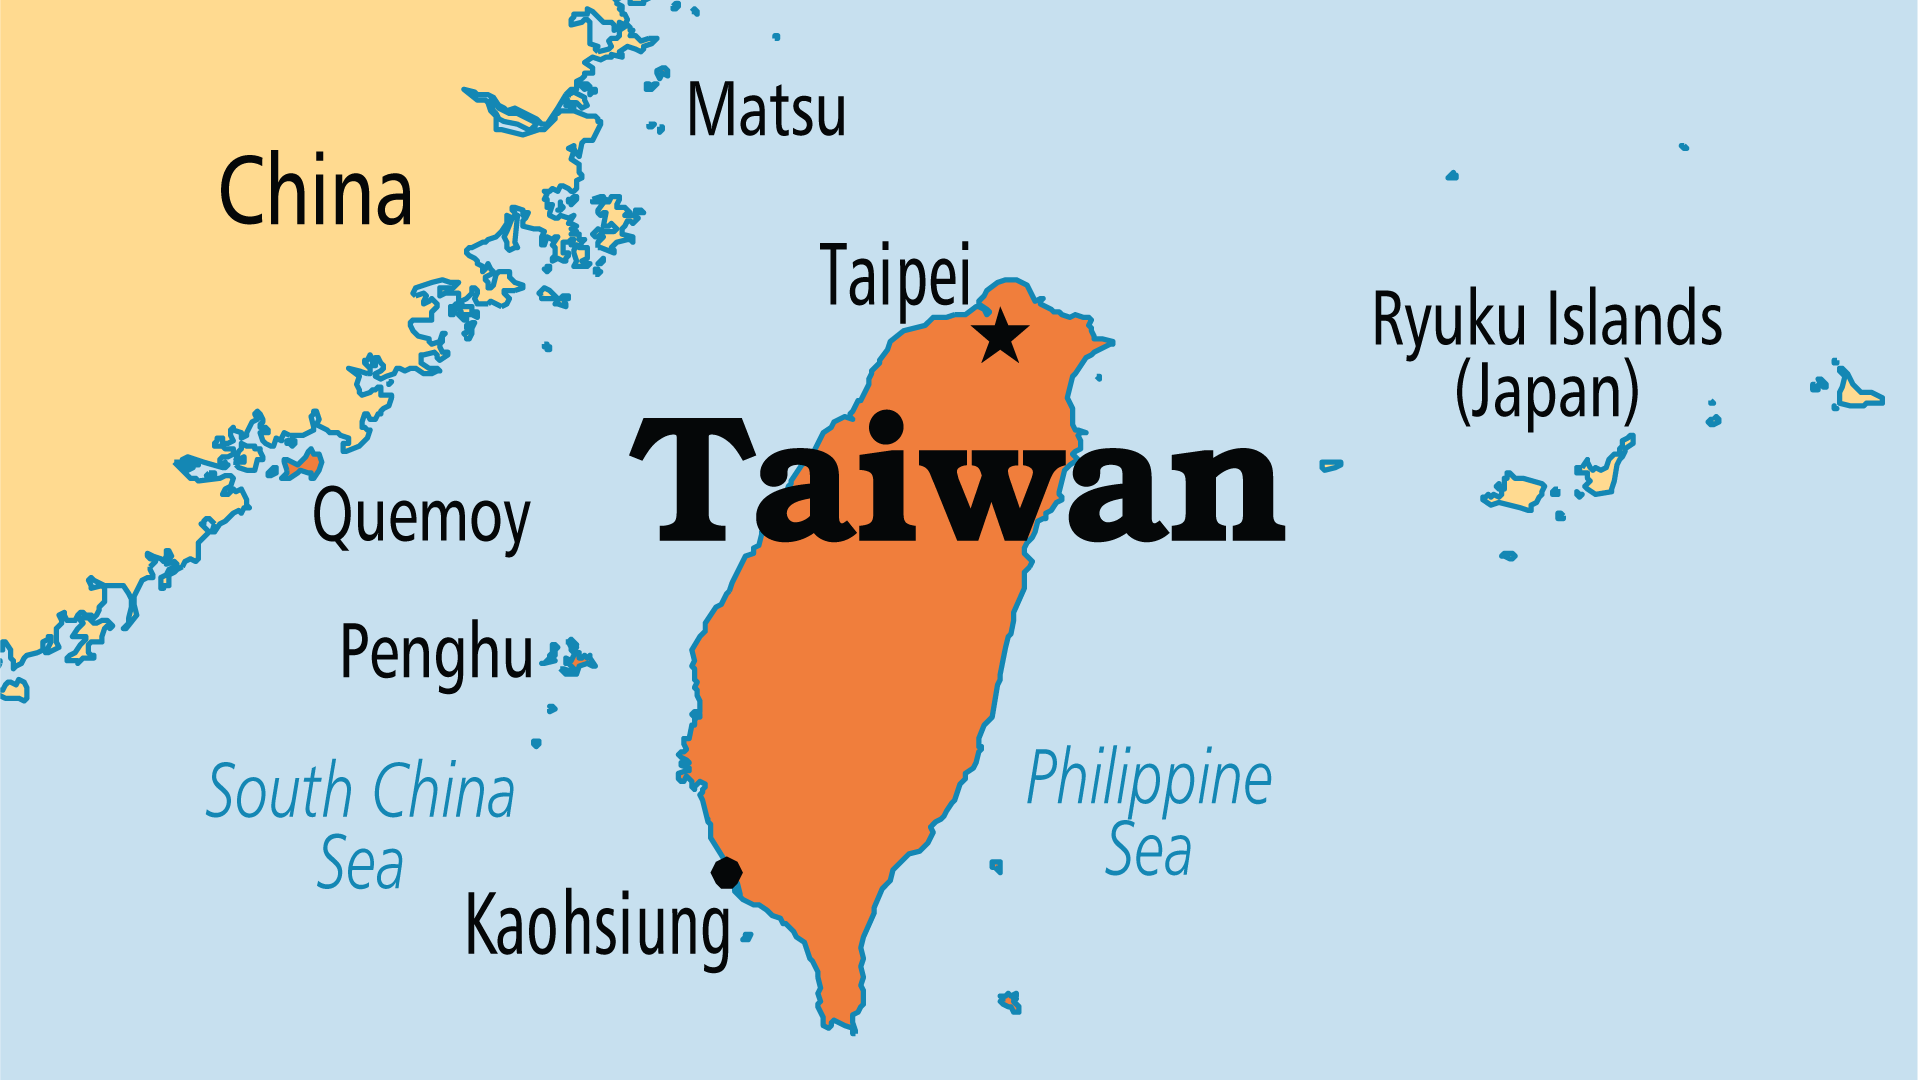 China, Taiwan (Operation World)